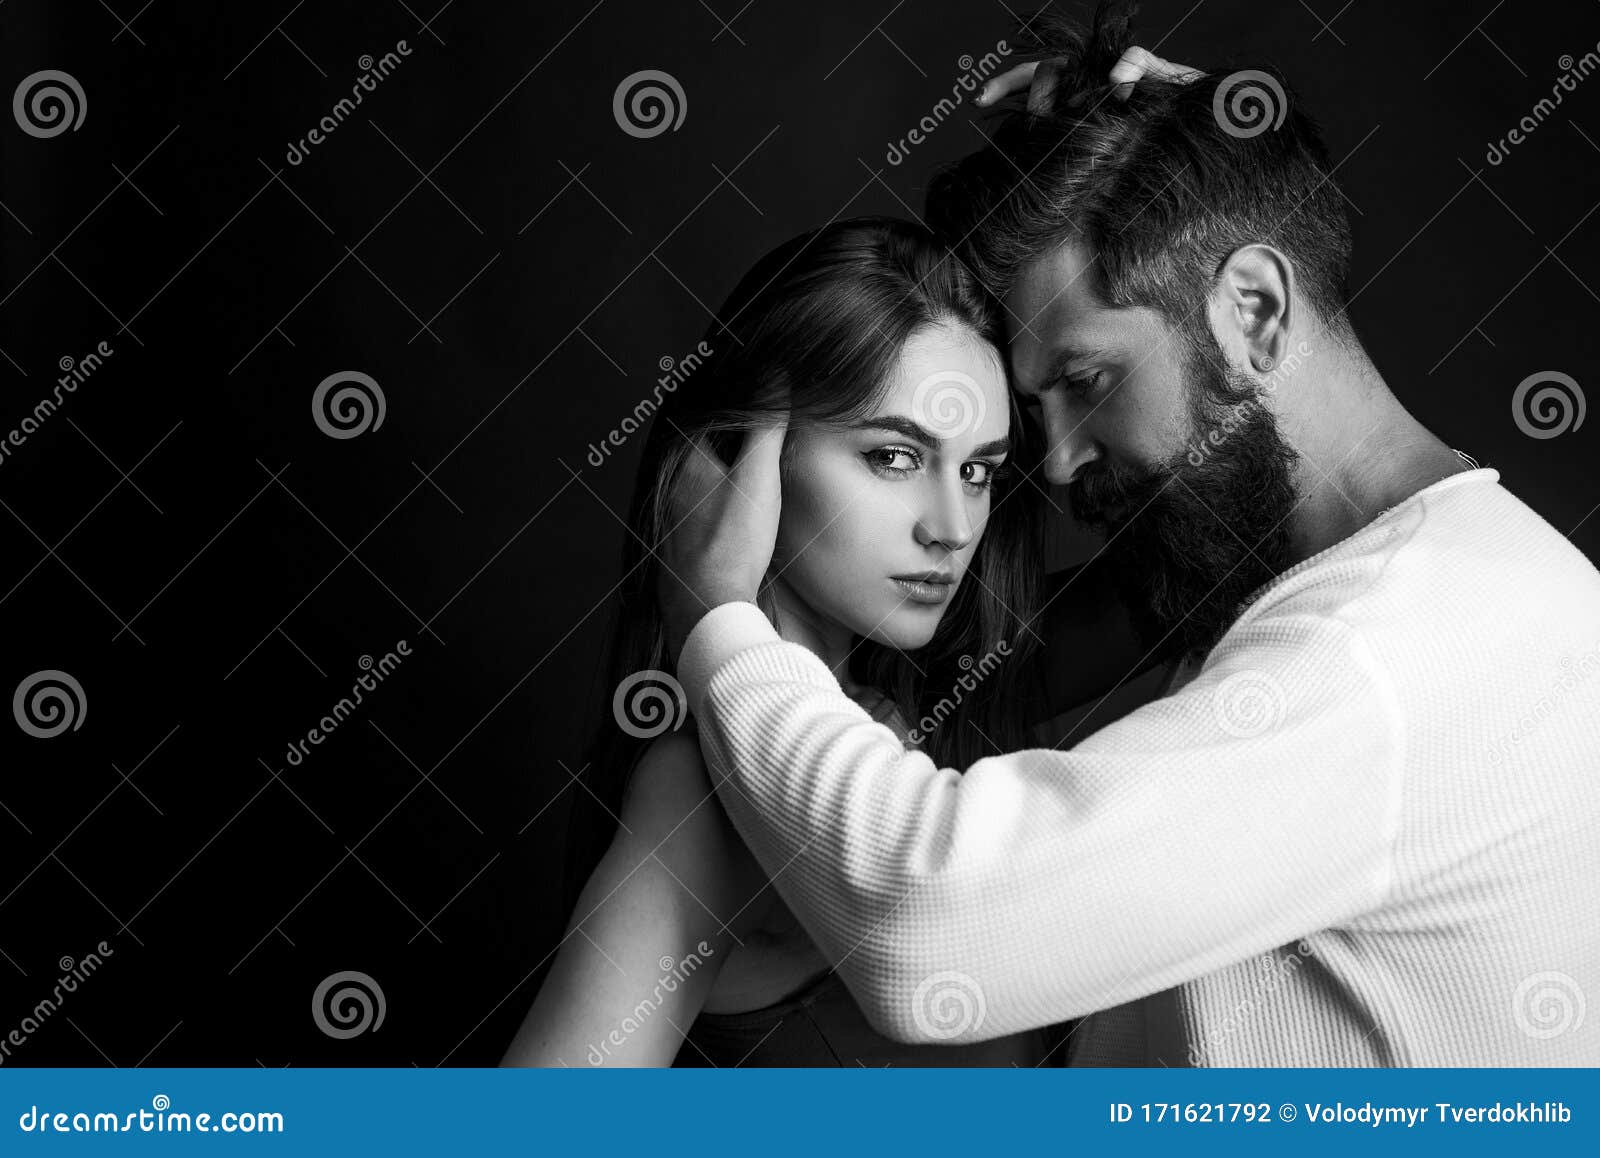 Passionistisch Man Die Een Knappe Vrouw Zachtjes Kussen Met Verlangen Jonge Koppels Die Gepassioneerd Intens Seks Hebben Intiem Stock Foto